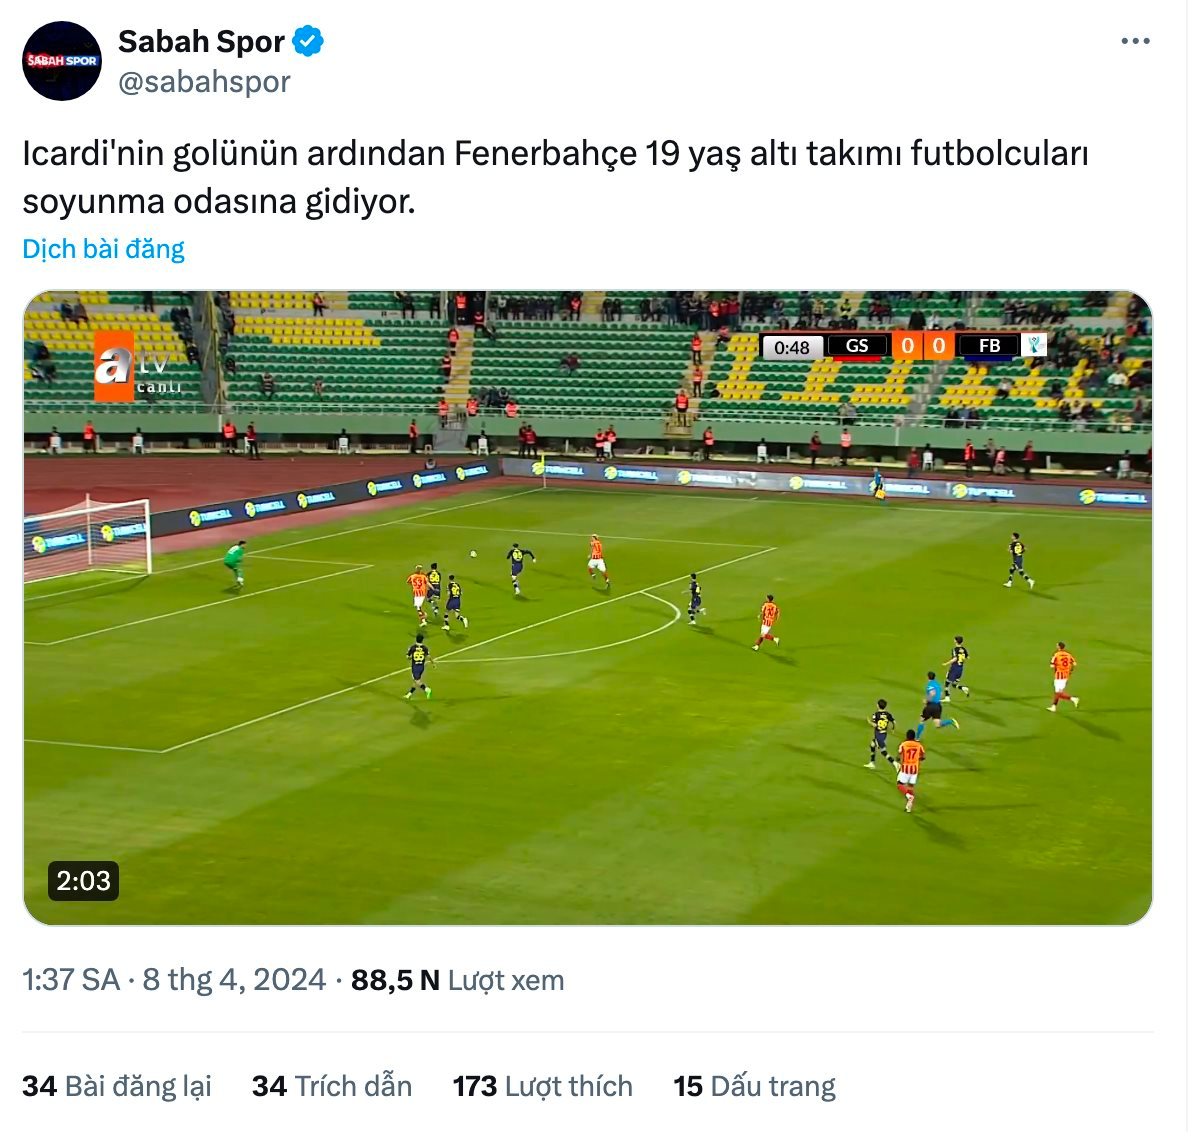 Độc lạ: Chung kết Siêu cúp Thổ Nhĩ Kỳ xác định được nhà vô địch chỉ sau 1 phút.